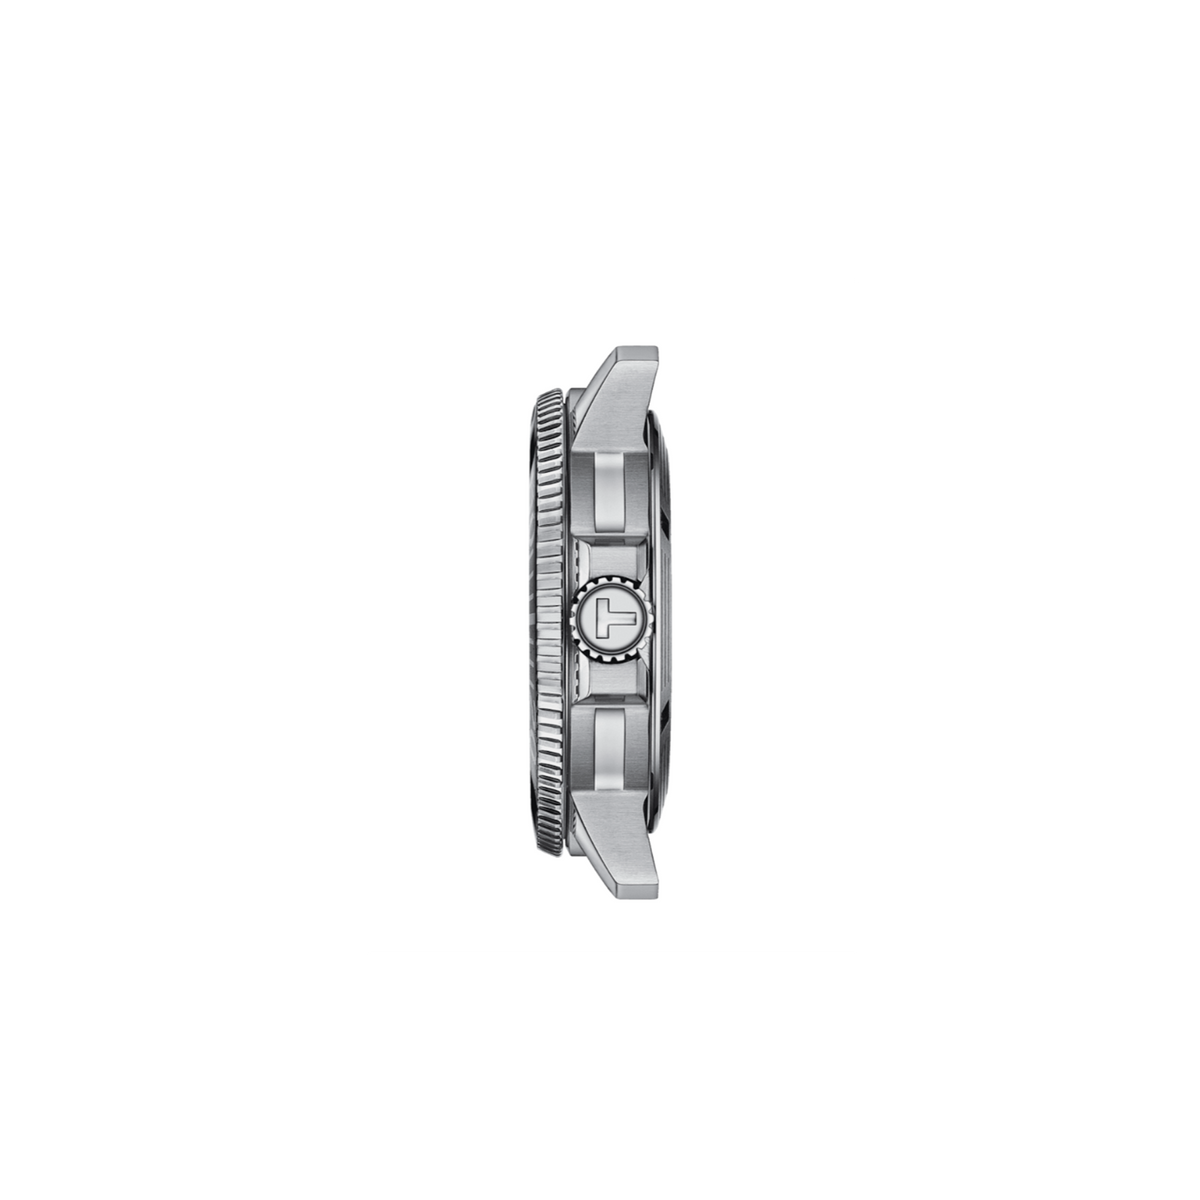 Tissot Seastar Men's 43mm Automatic Watch T120.407.11.041.03